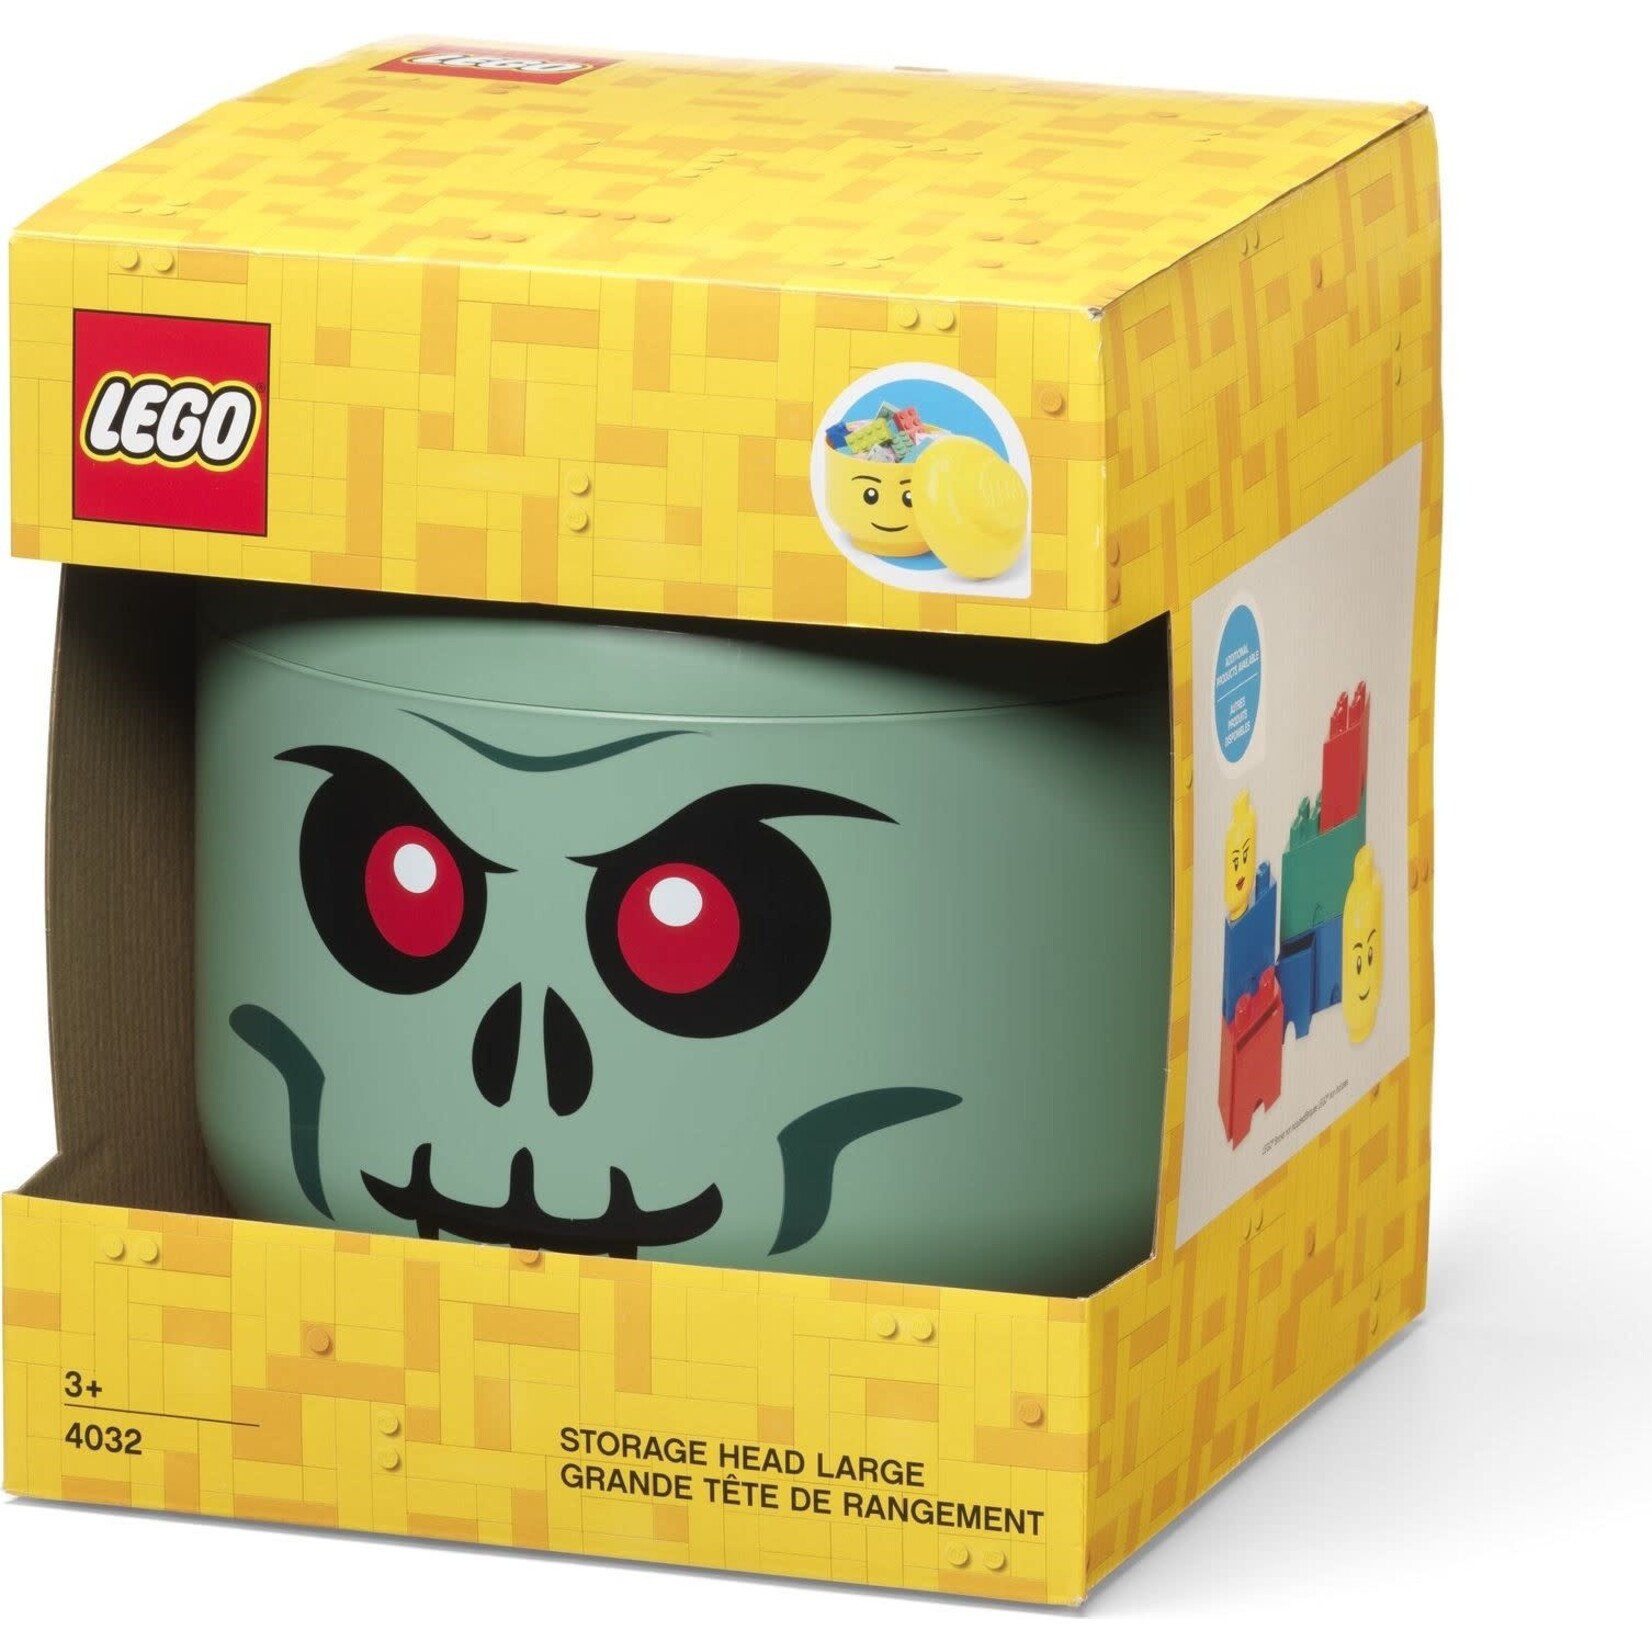 LEGO Opberghoofd Groot Skelet groen - 5007889